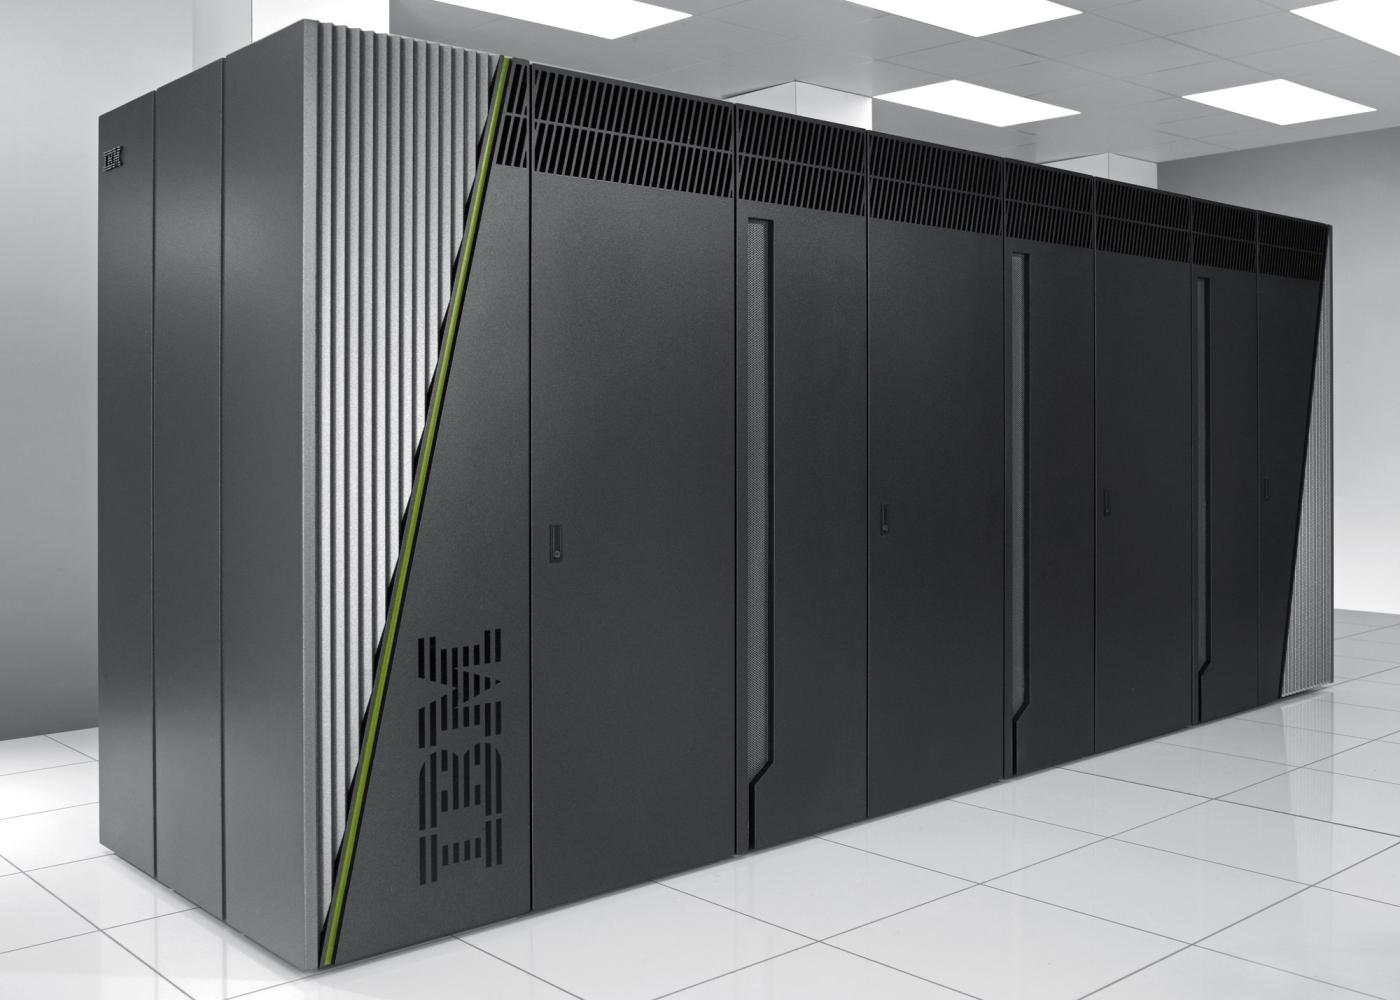 Dünyanın birinci ve dördüncü süper bilgisayarı IBM'den: Sequoia ve SuperMUC